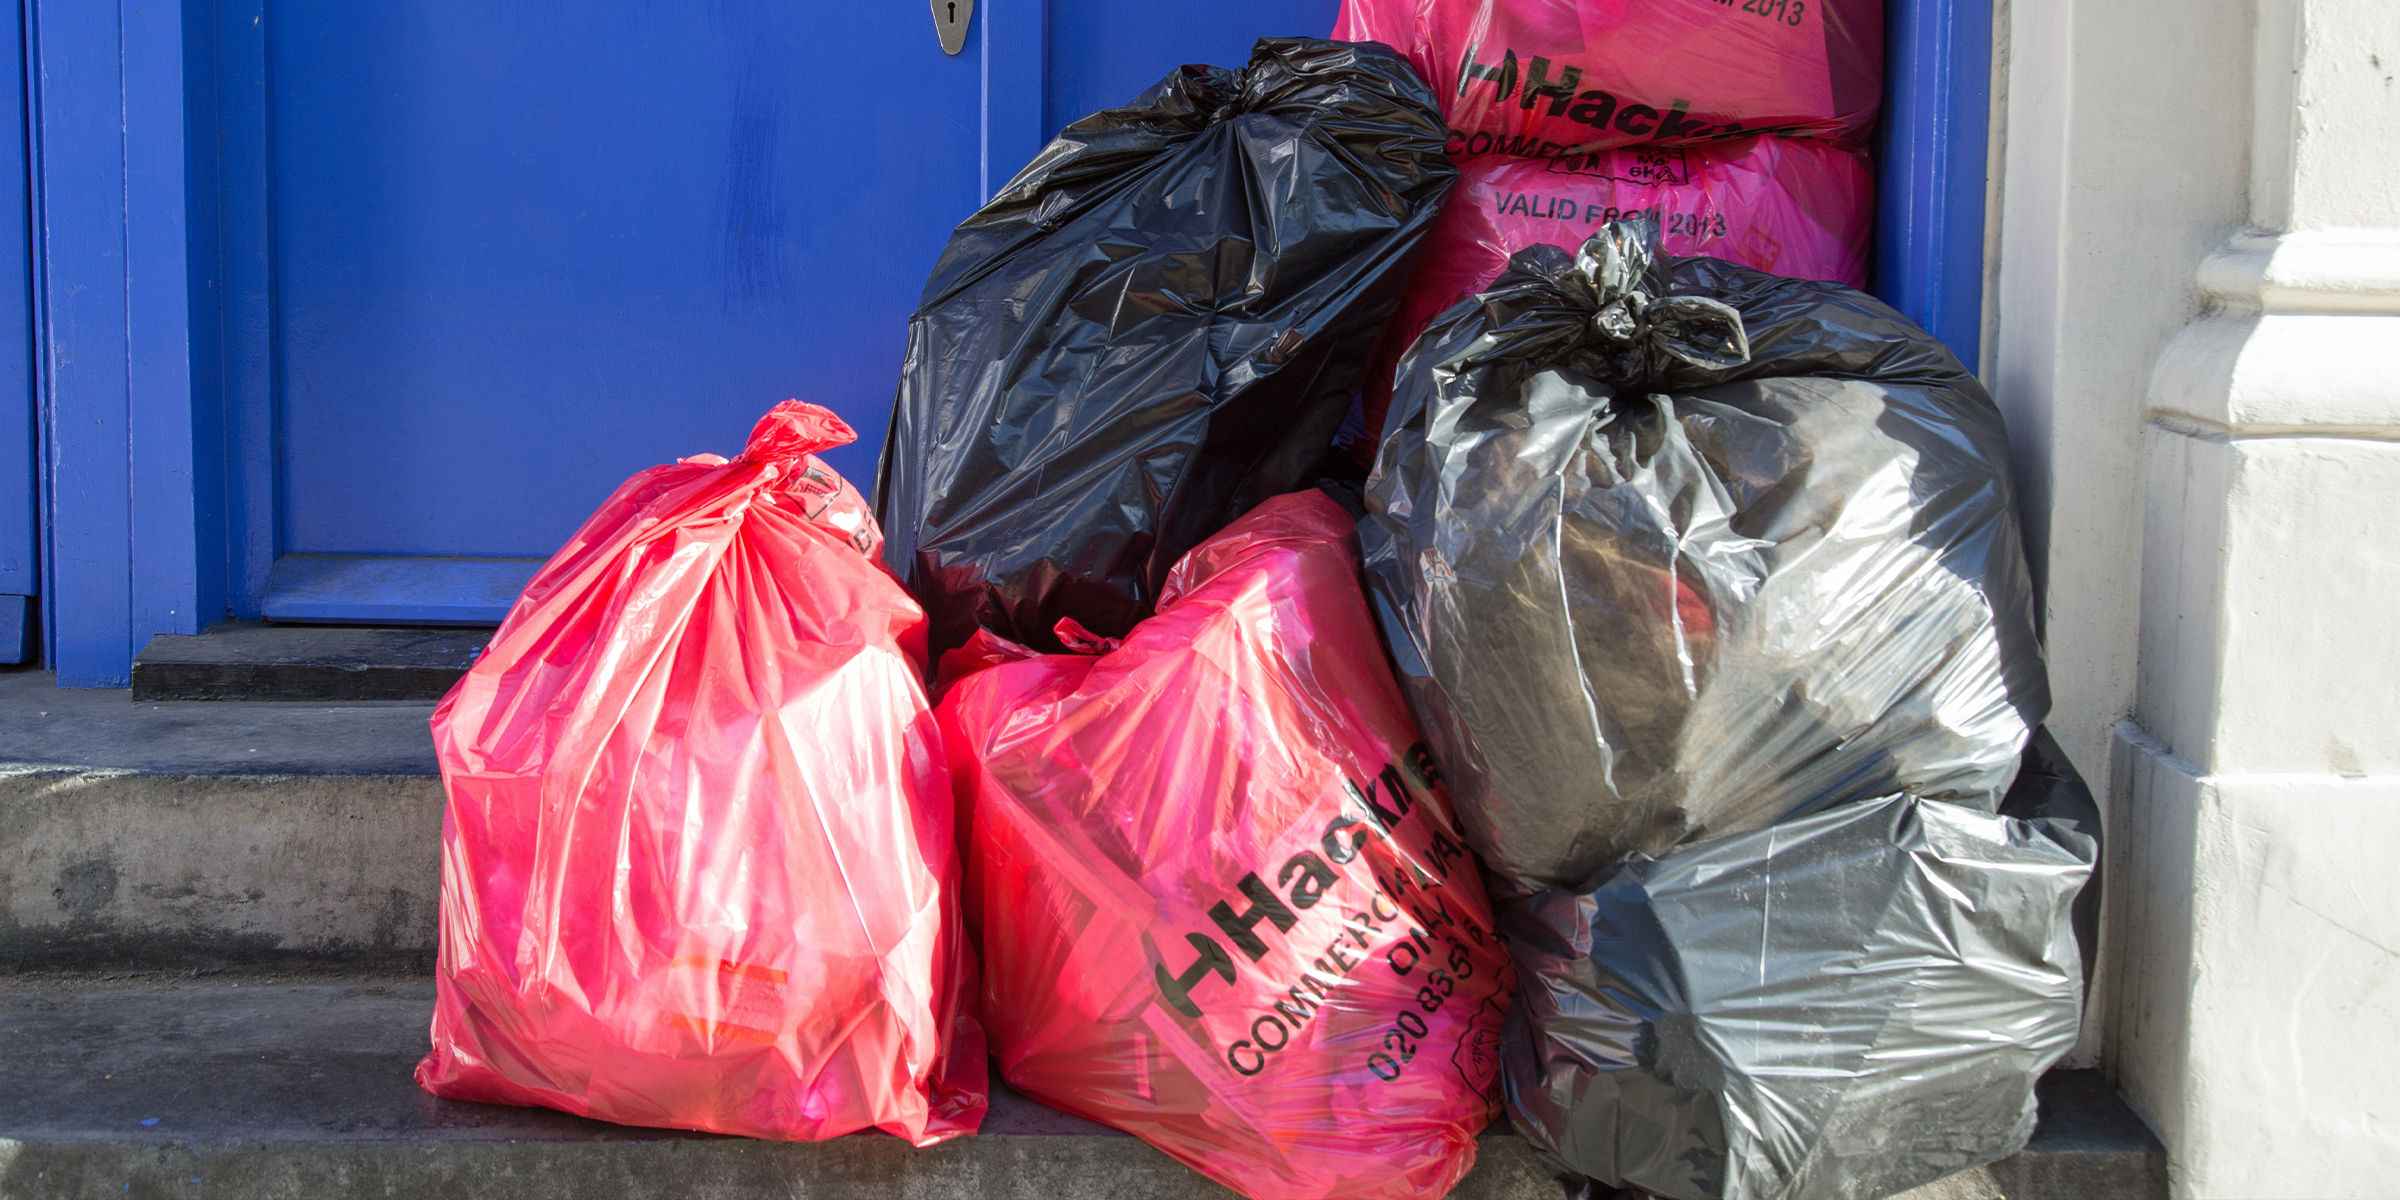 Bolsas de basura apiladas | Foto: Shutterstock